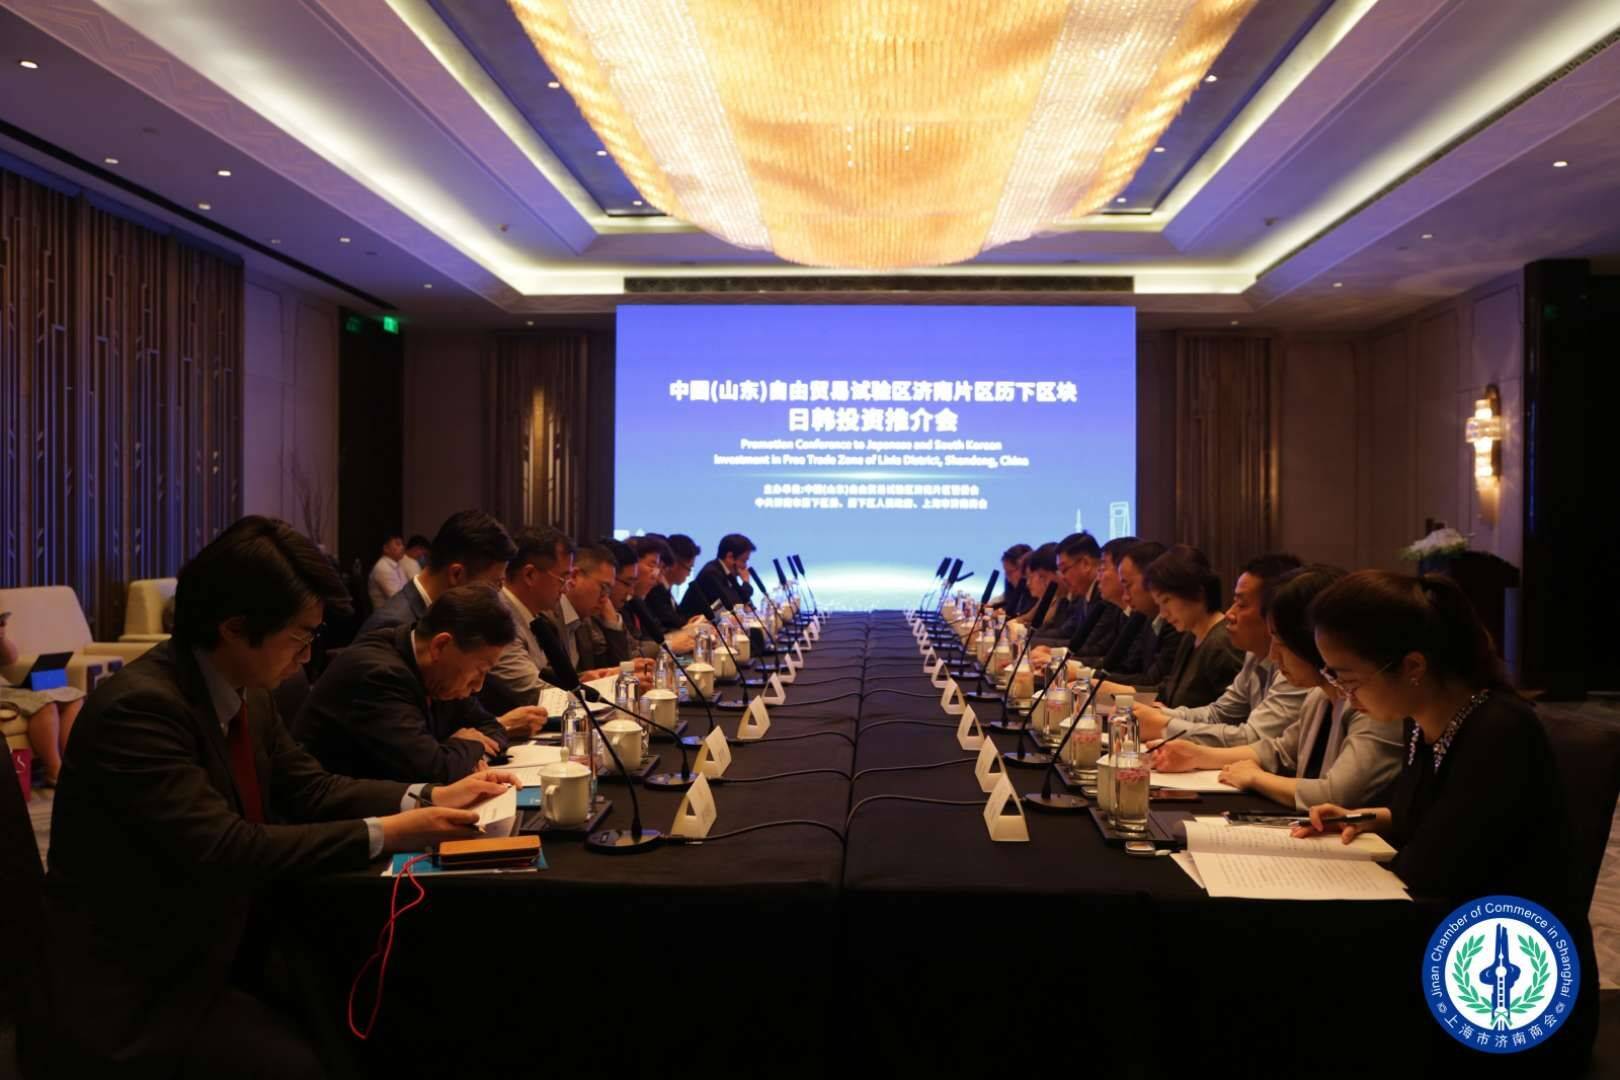 山东自贸试验区济南片区历下区块日韩投资推介会在上海举行